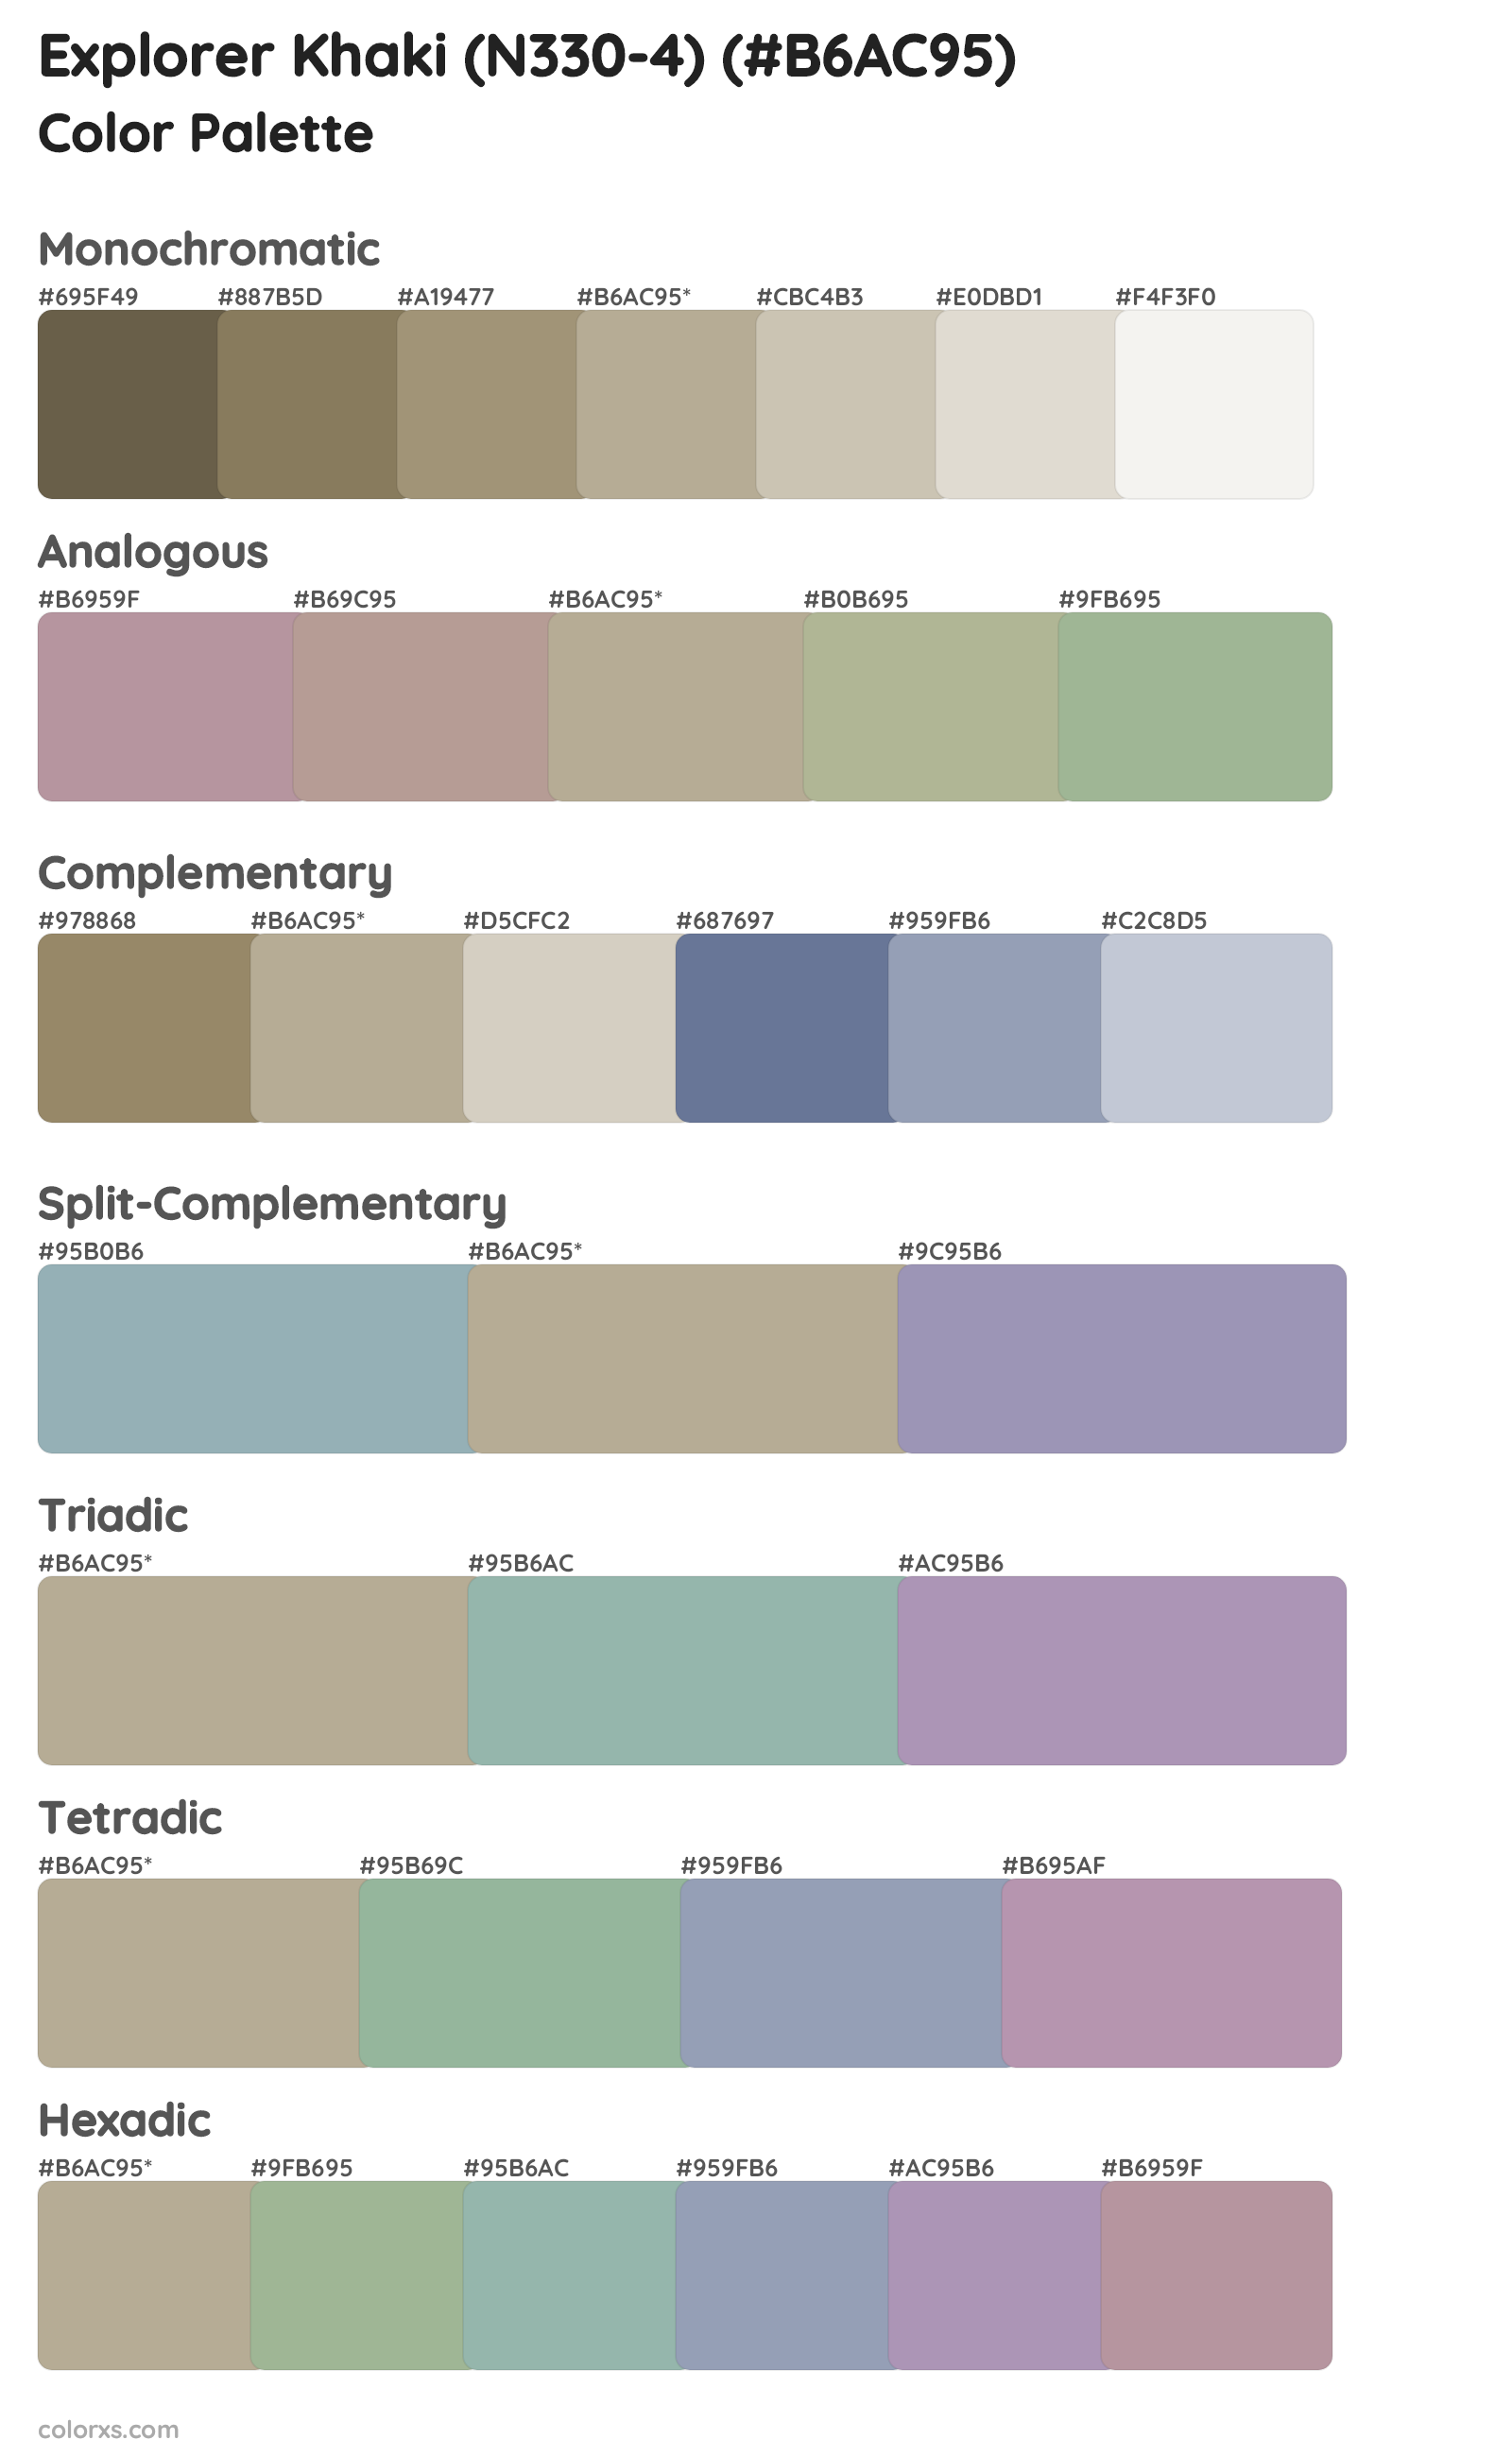 Explorer Khaki (N330-4) Color Scheme Palettes